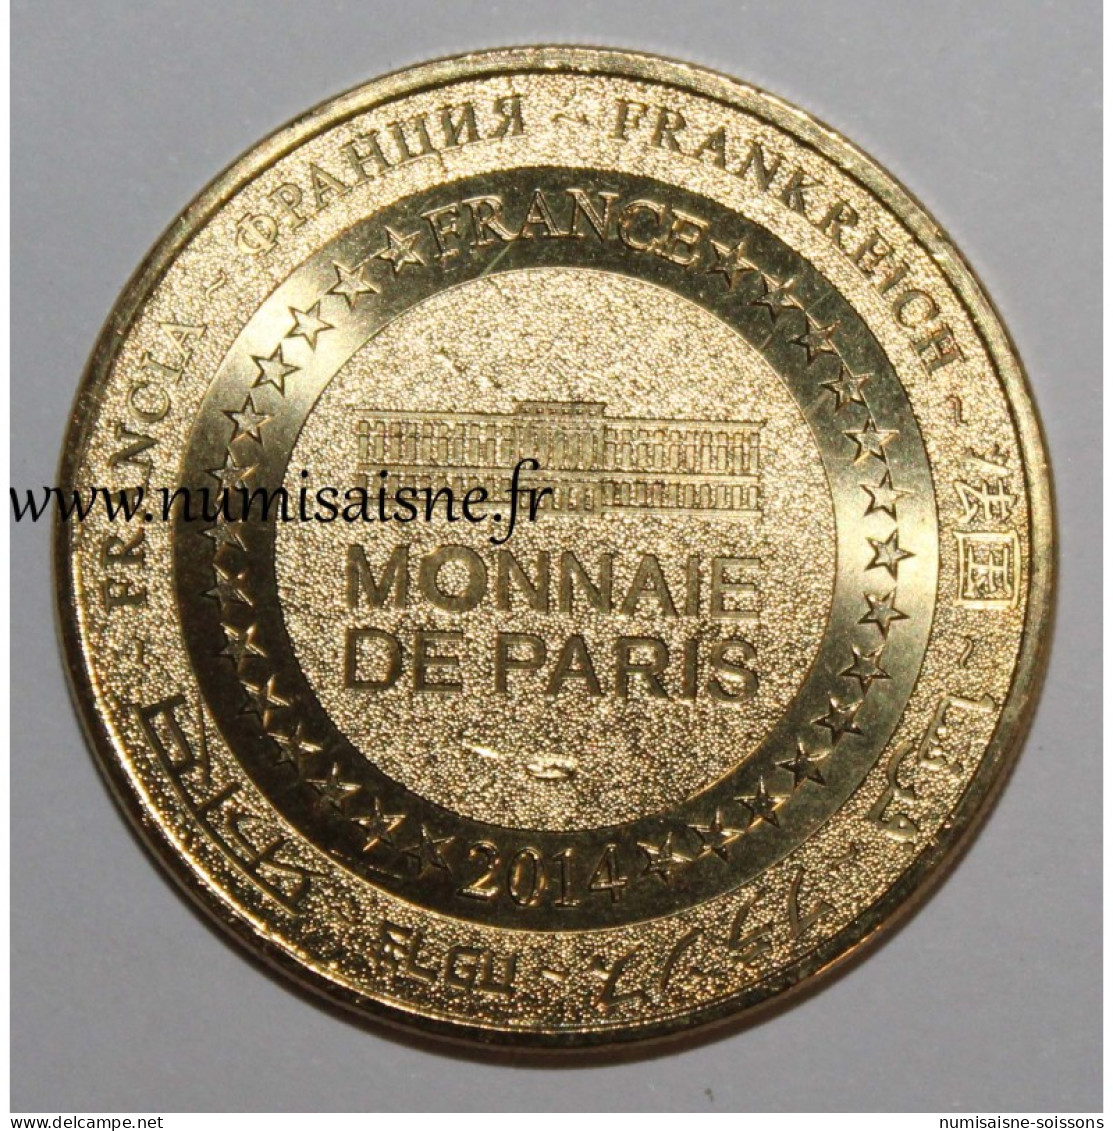 75 - PARIS - BATEAUX PARISIENS - Monnaie De Paris - 2014 - 2014